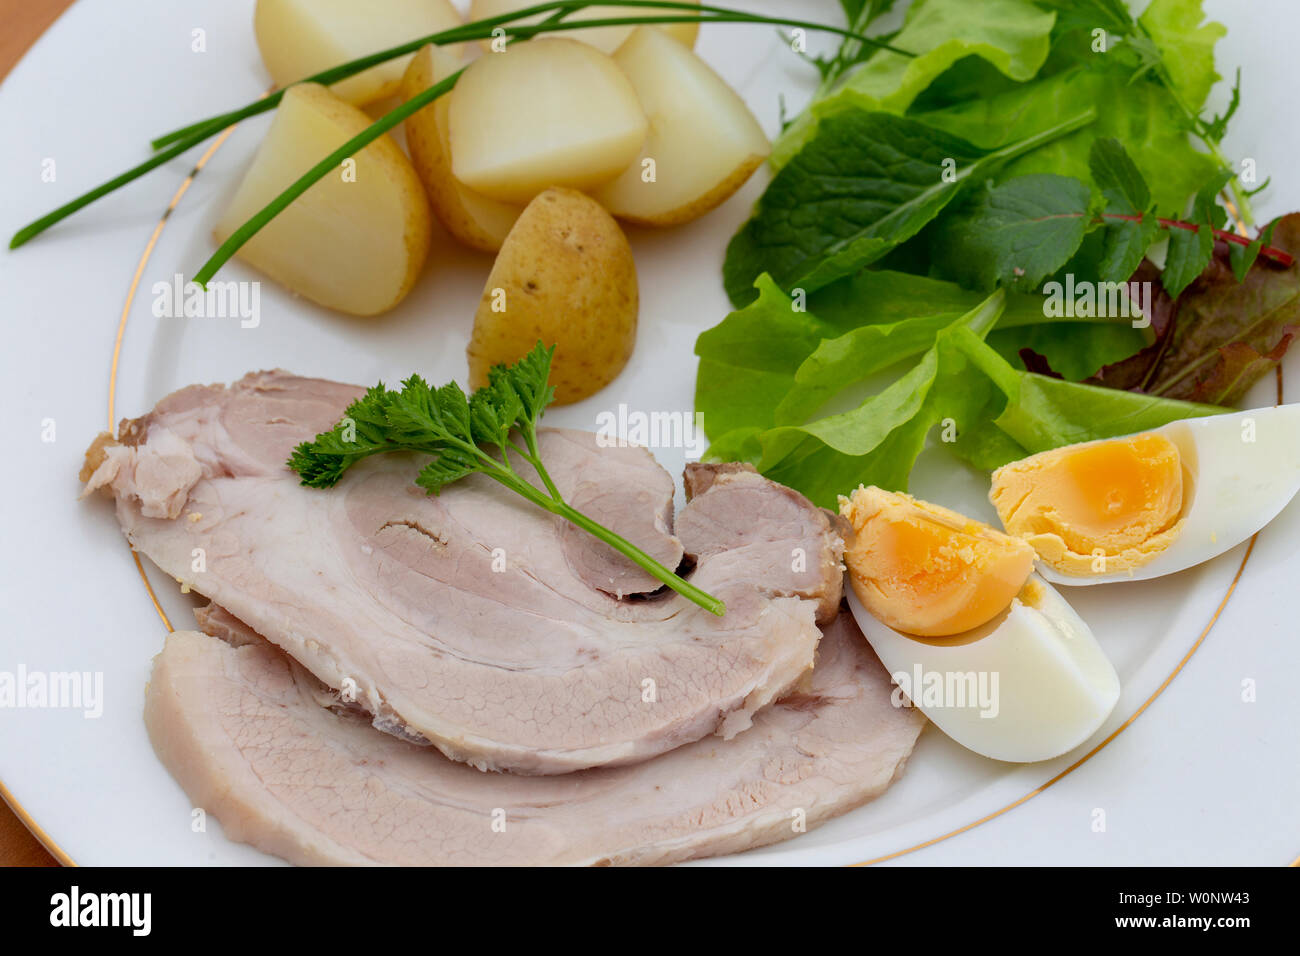 Elevato angolo di visione del freddo arrosto di maiale slice la cena con foglie di insalata, erba cipollina, uovo e patate novelle bollite Foto Stock